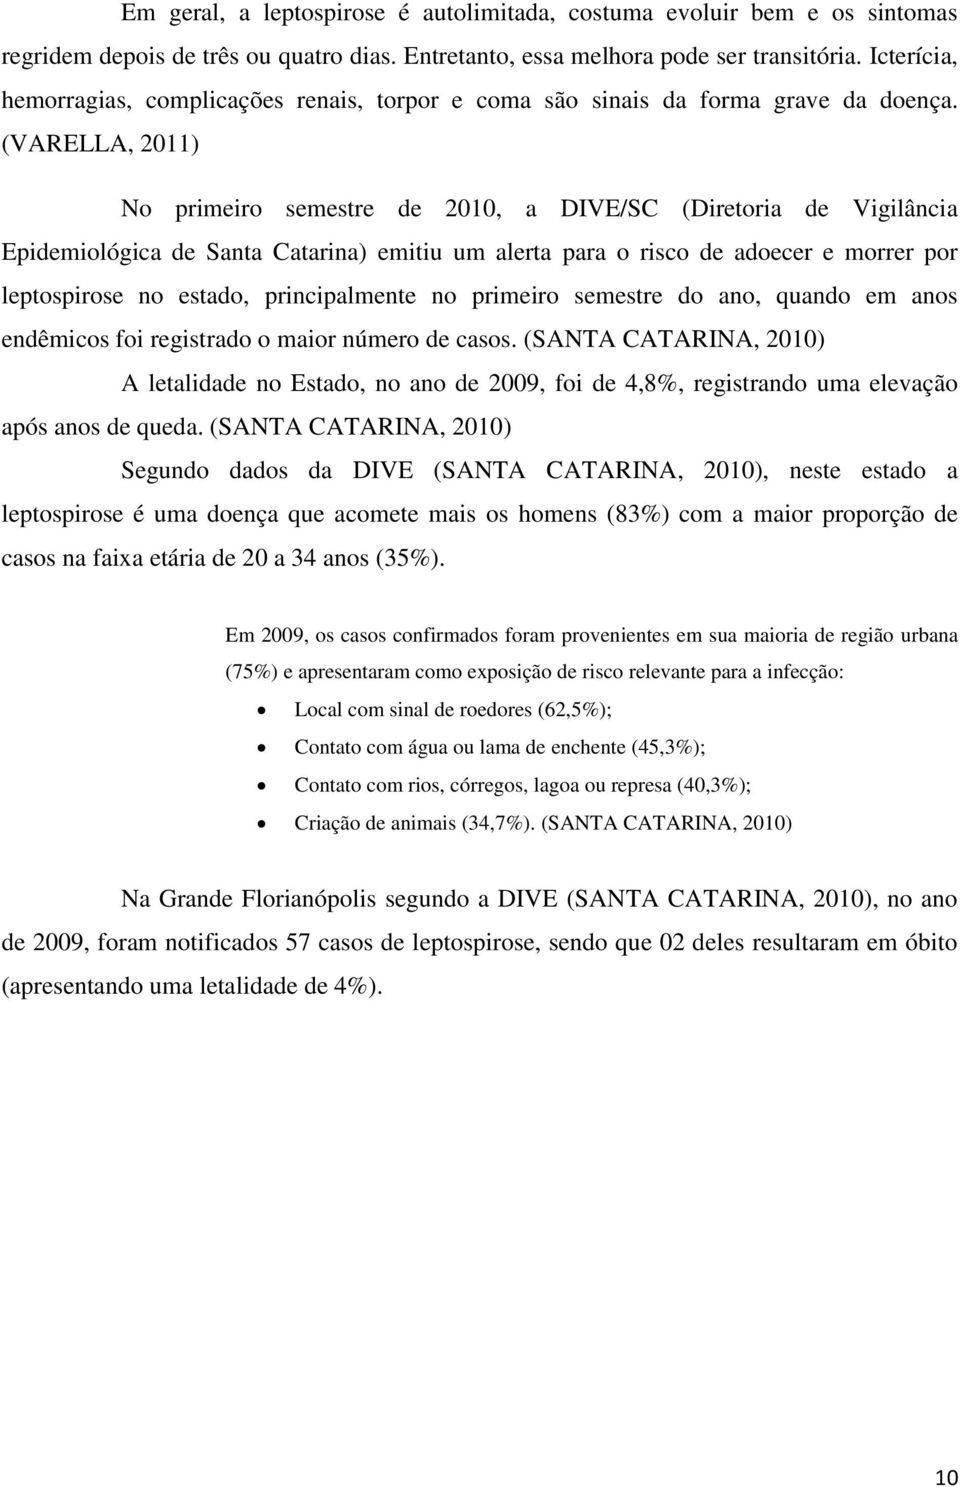 (VARELLA, 2011) No primeiro semestre de 2010, a DIVE/SC (Diretoria de Vigilância Epidemiológica de Santa Catarina) emitiu um alerta para o risco de adoecer e morrer por leptospirose no estado,